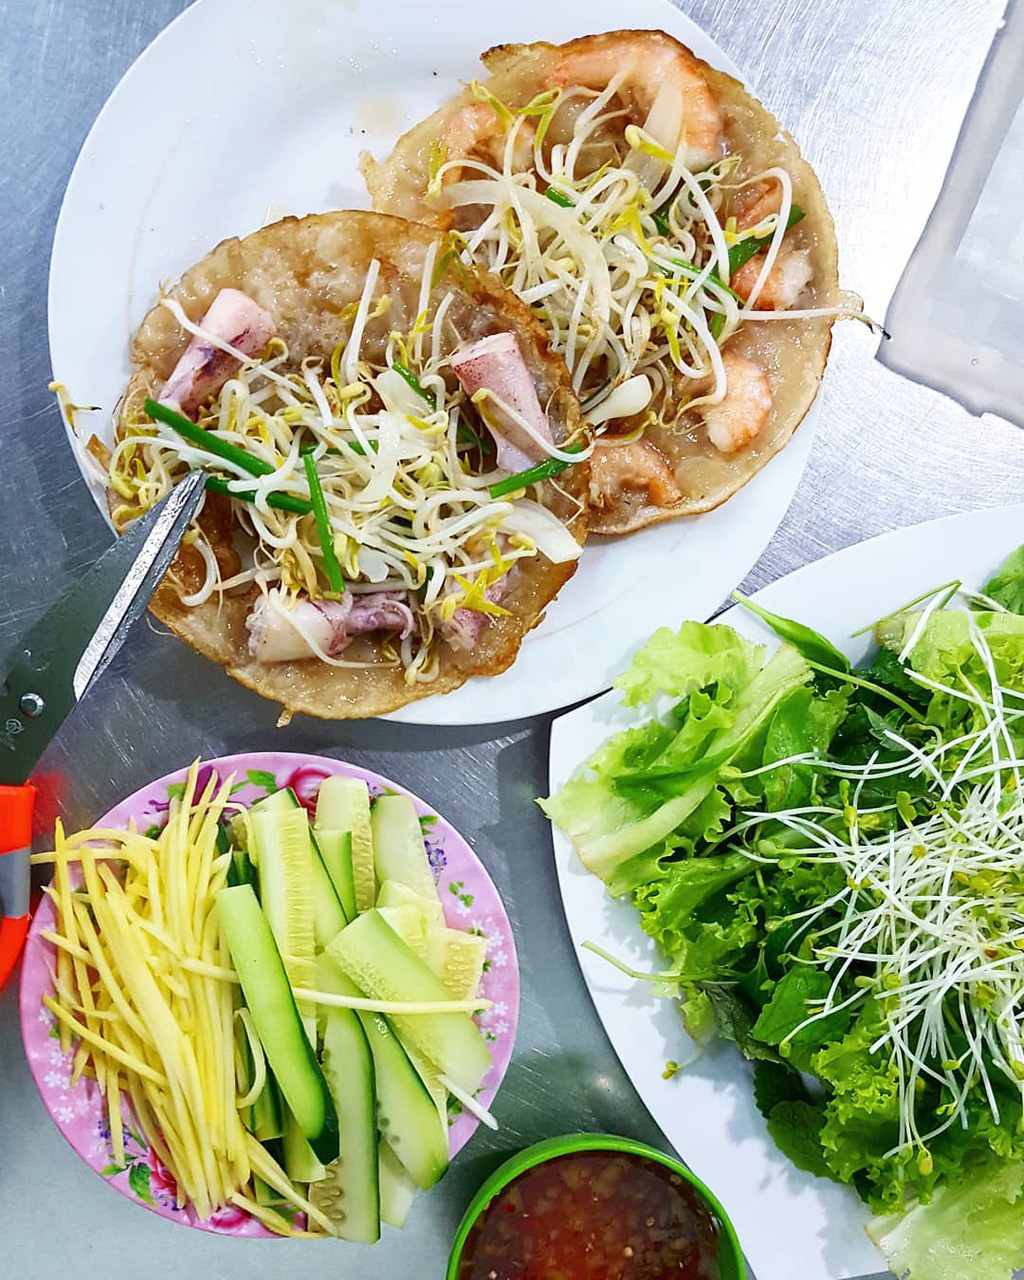 Ngoài hải sản, Nha Trang còn nhiều món ăn gây thương nhớ - Ảnh 1.